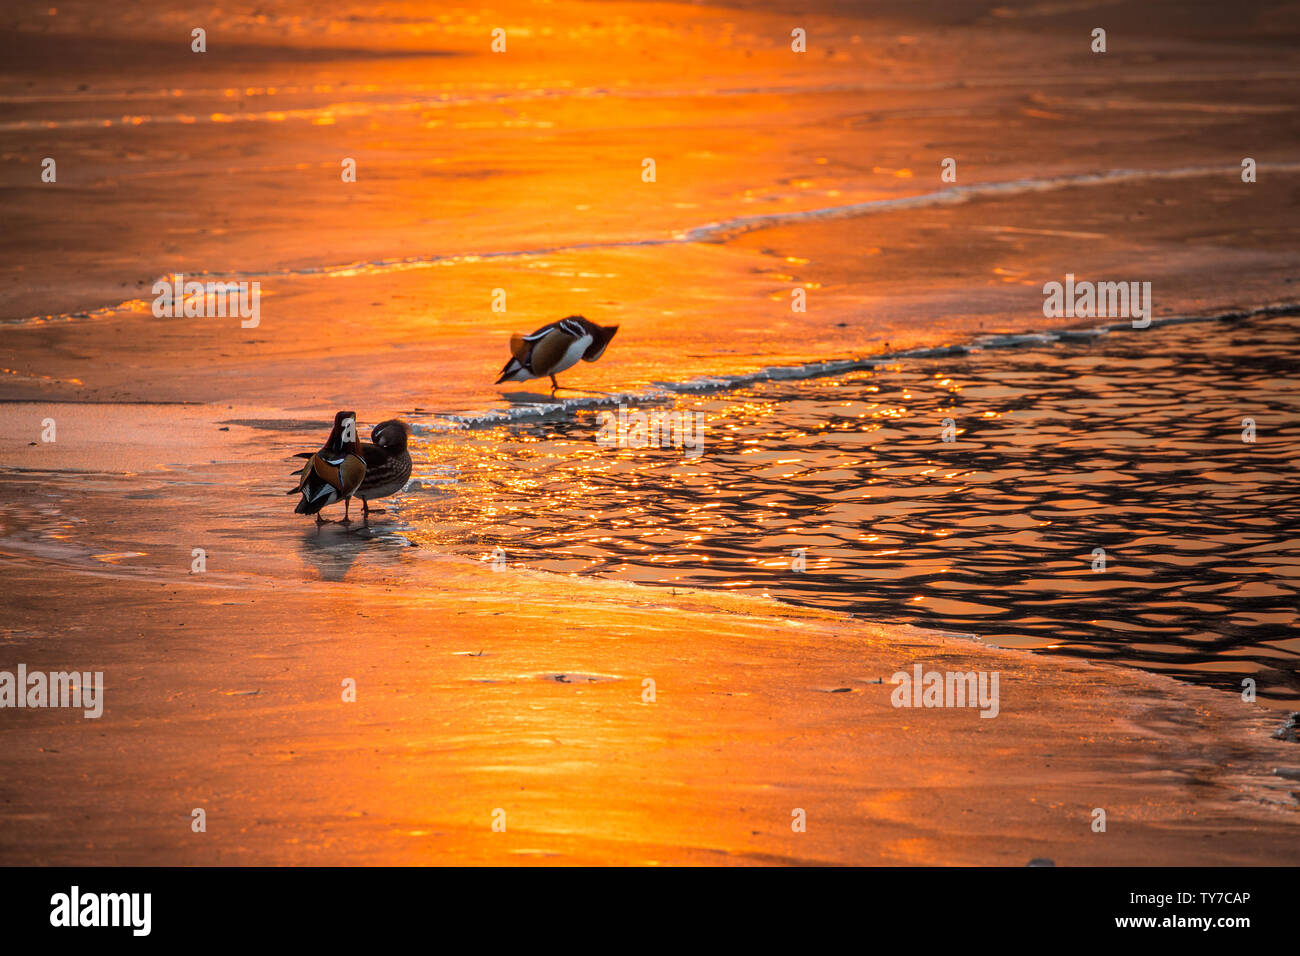 Le lac et la glace sous le soleil du soleil étincelaient comme de l'or fondu, et les canards mandarins sur le lac n'a pas sauter dans l'eau pour chasser joyeusement. Banque D'Images